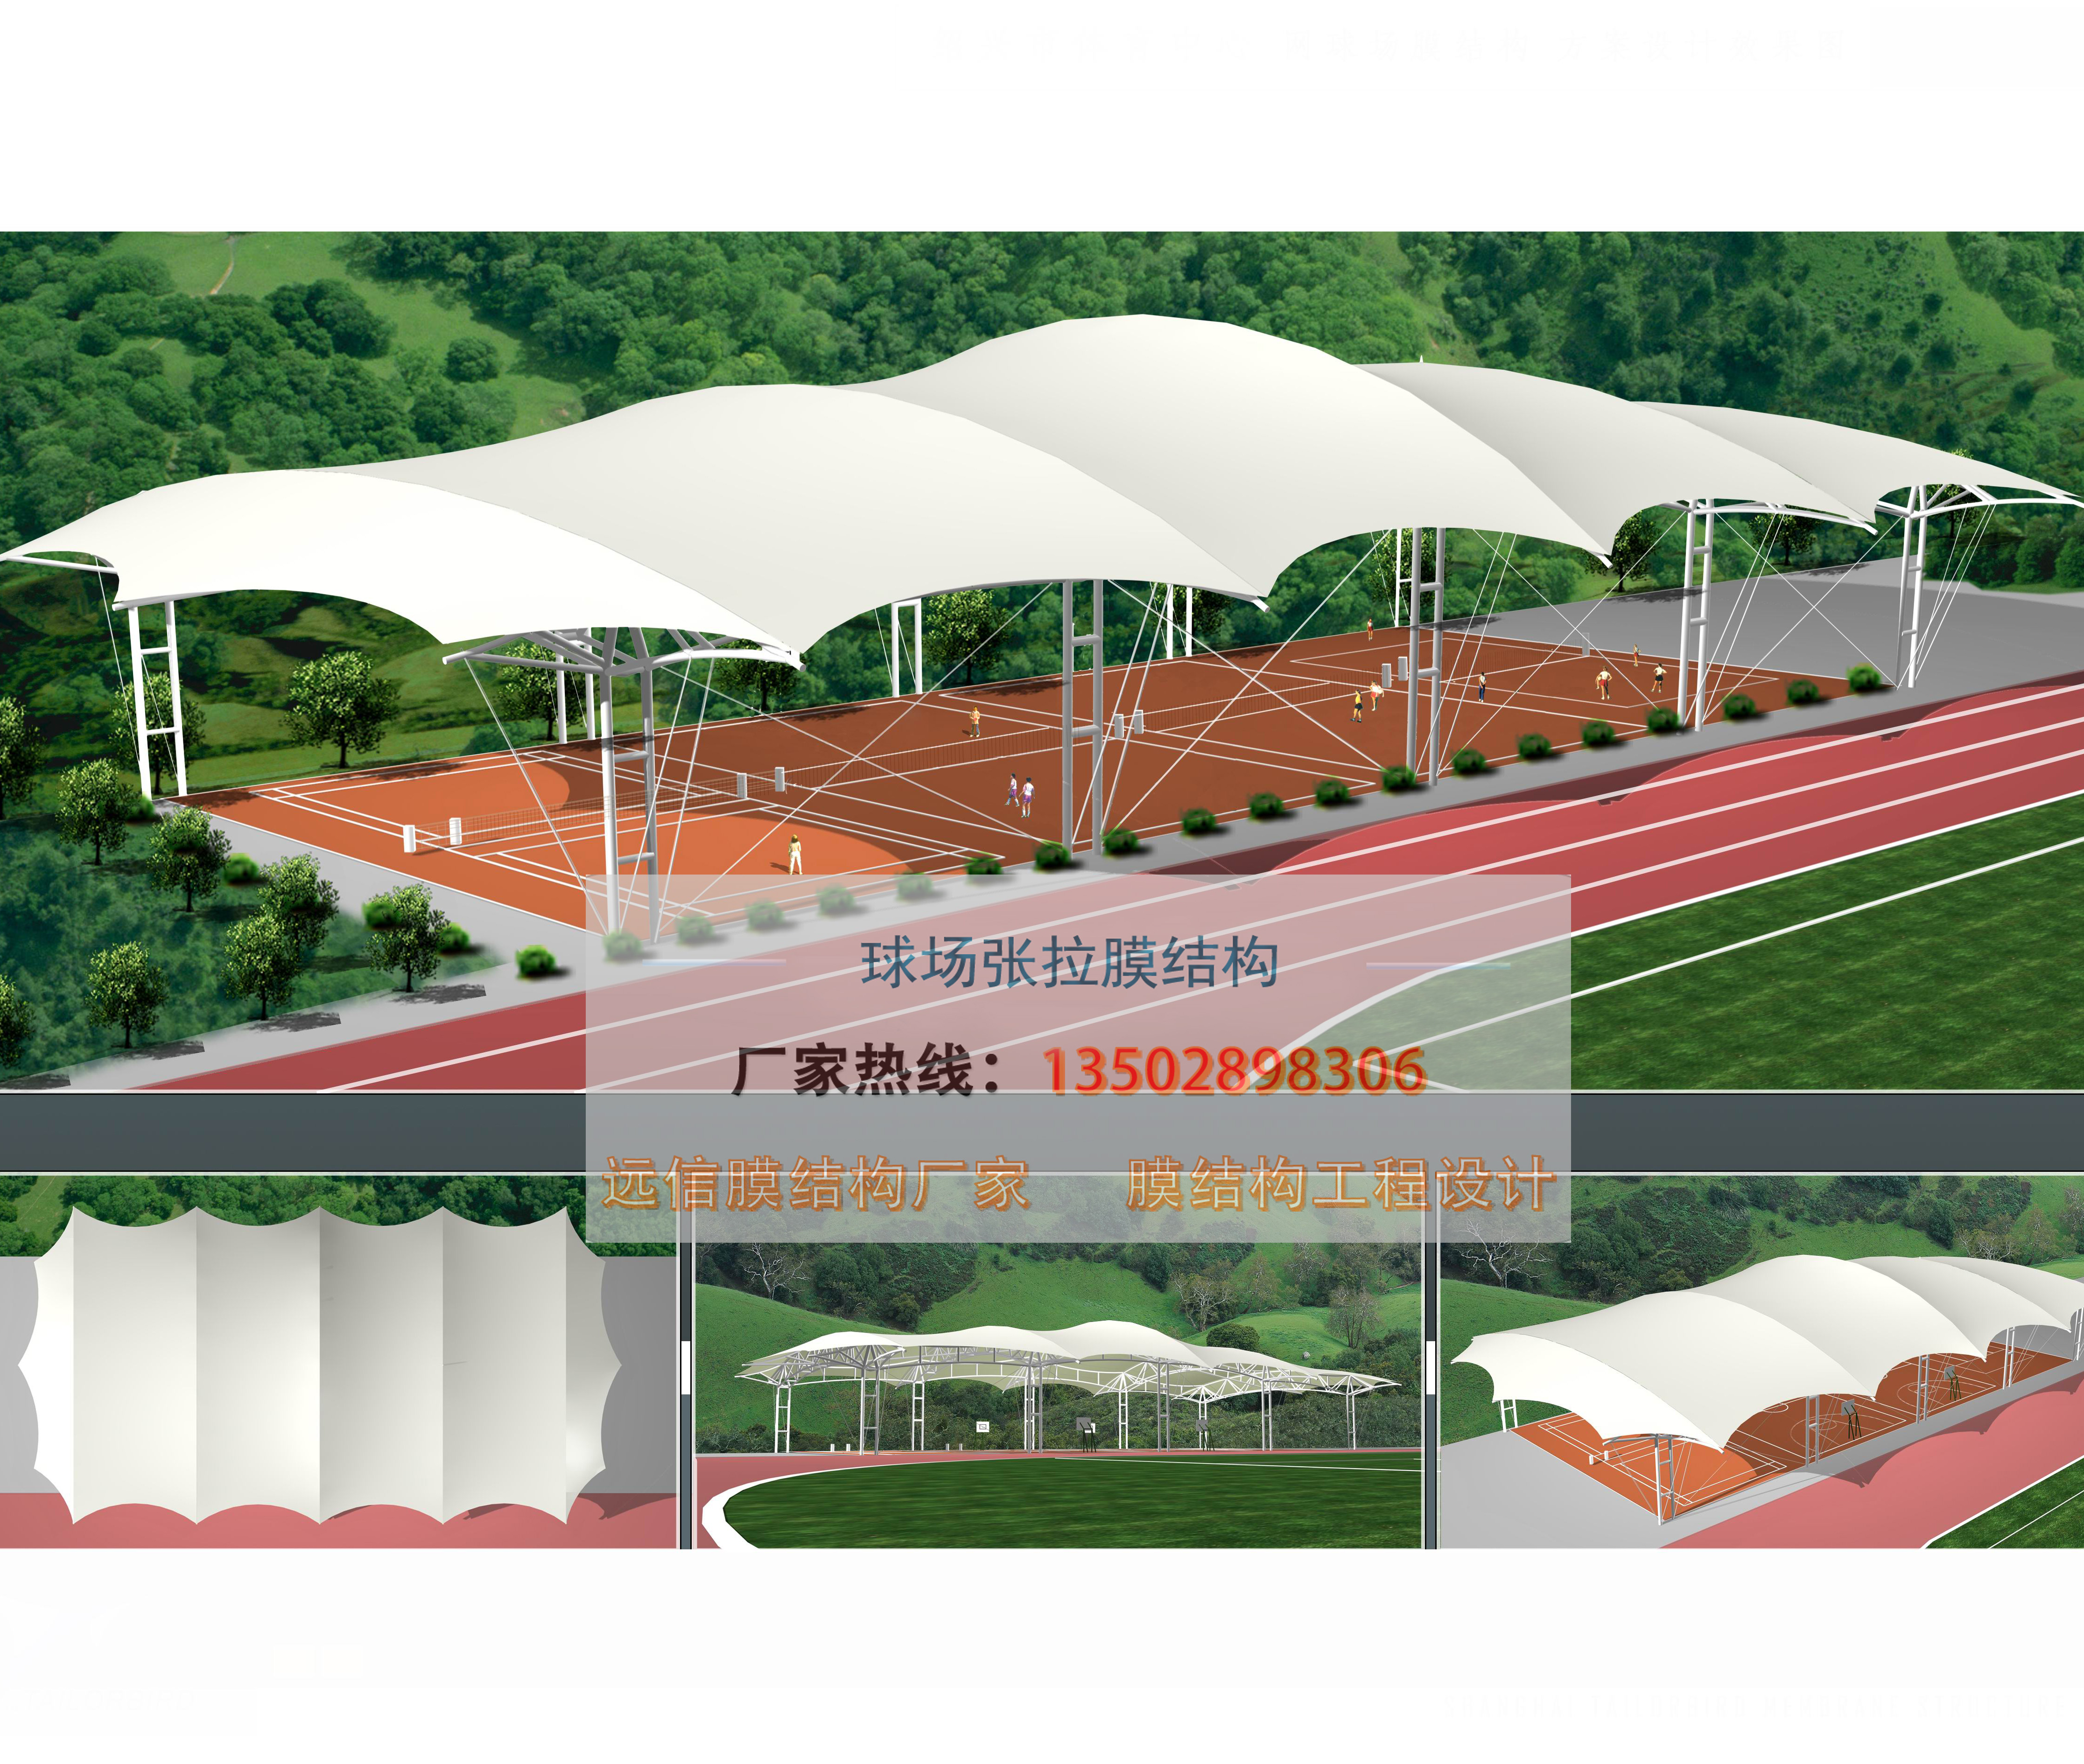 膜结构羽毛球场张拉膜工程 门球场膜结构屋面遮阳篷安装专业1级图片